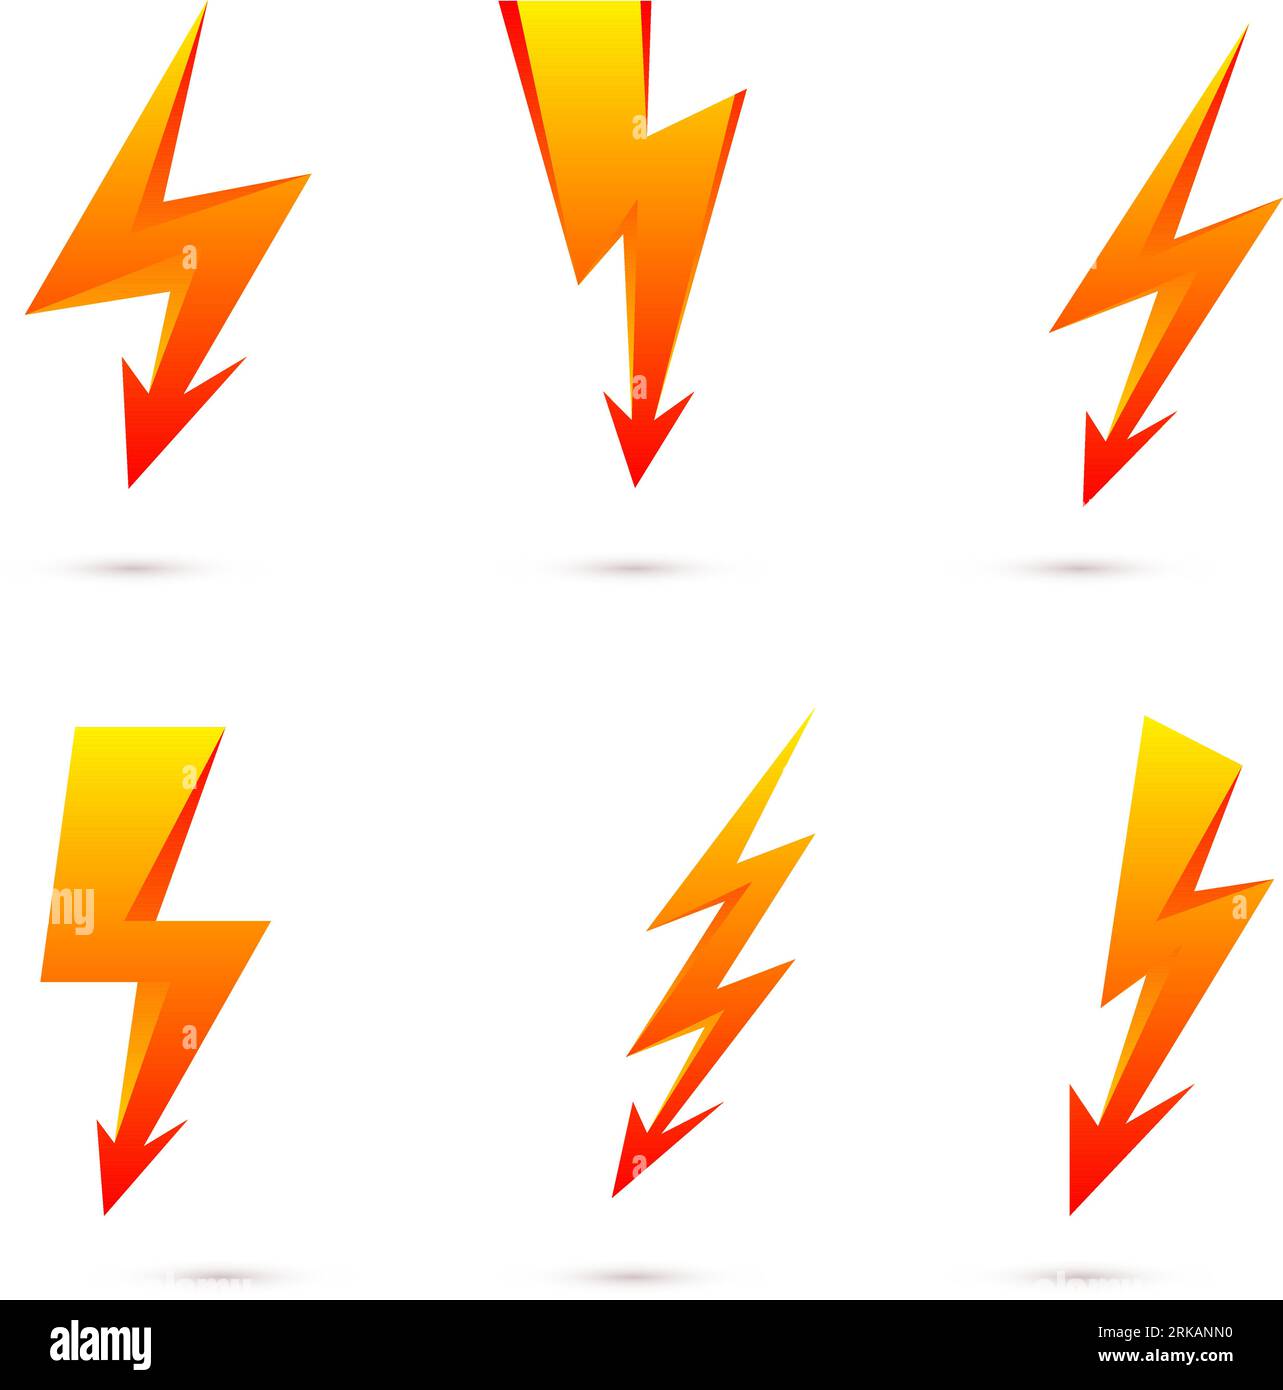 Lightning bolt signs. Yellow lightning bolt stickers. Vector